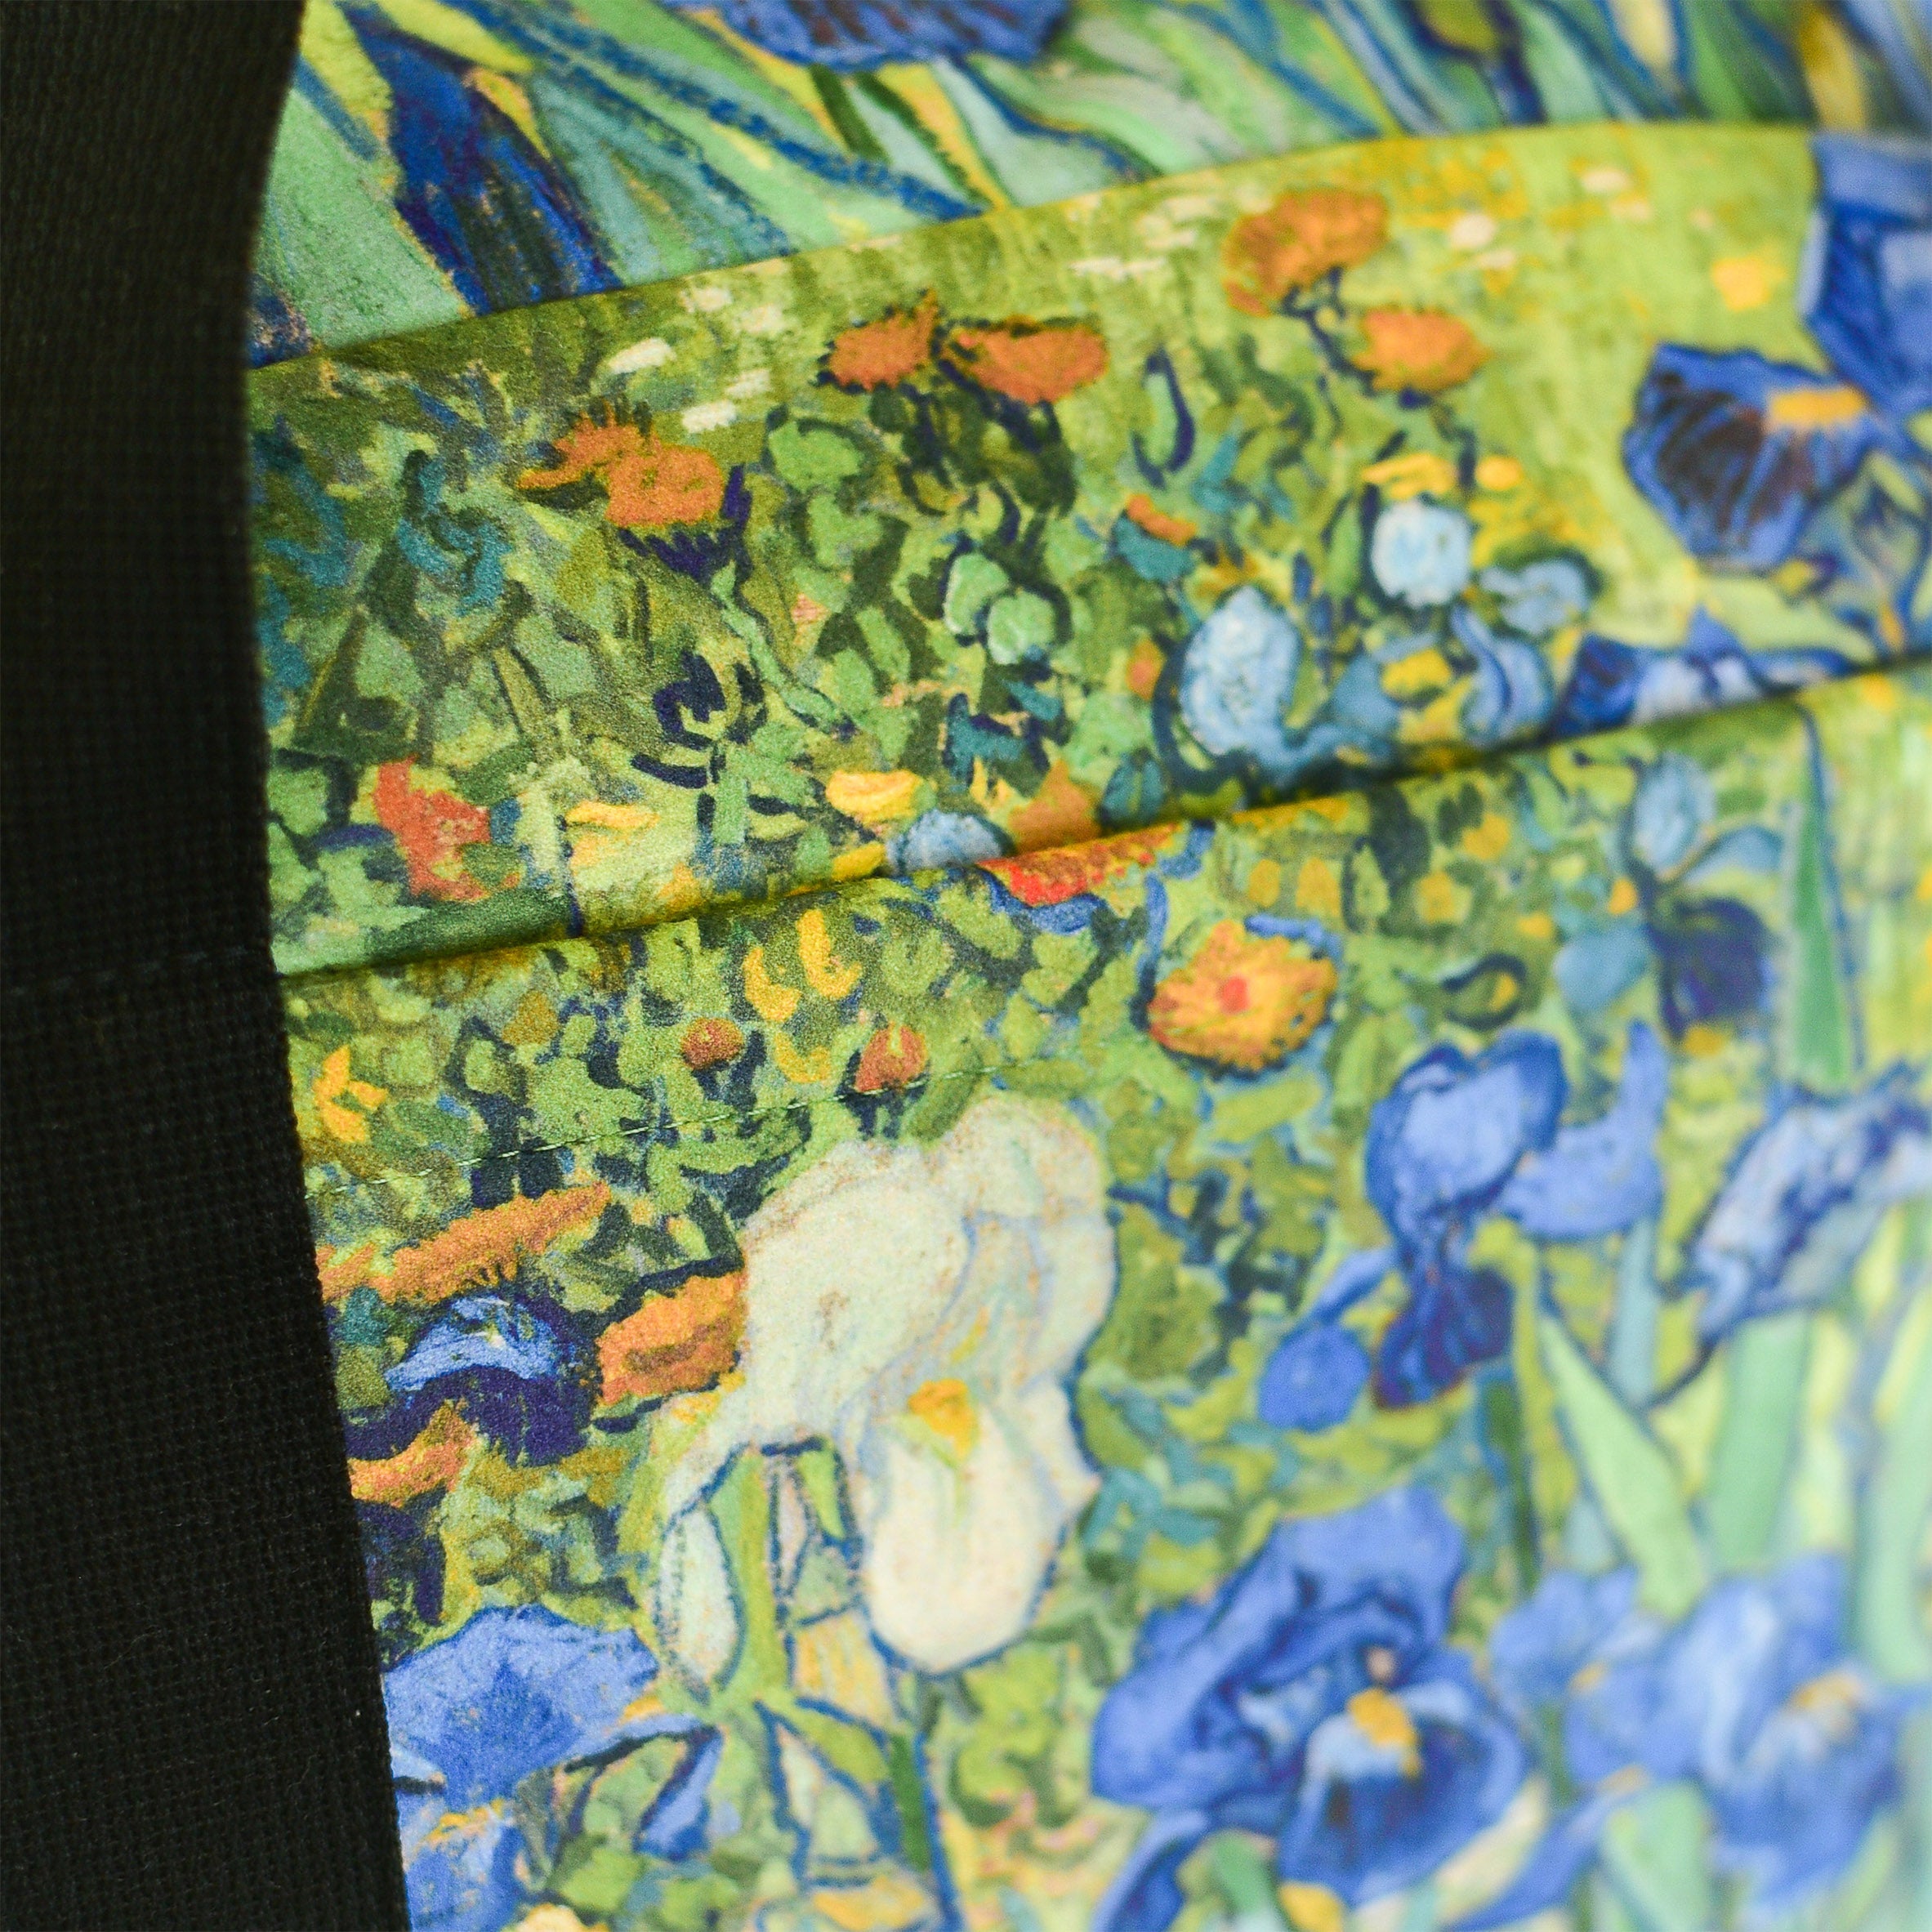 Kelioninis / sportinis krepšys Vincent van Gogh "The Irises"